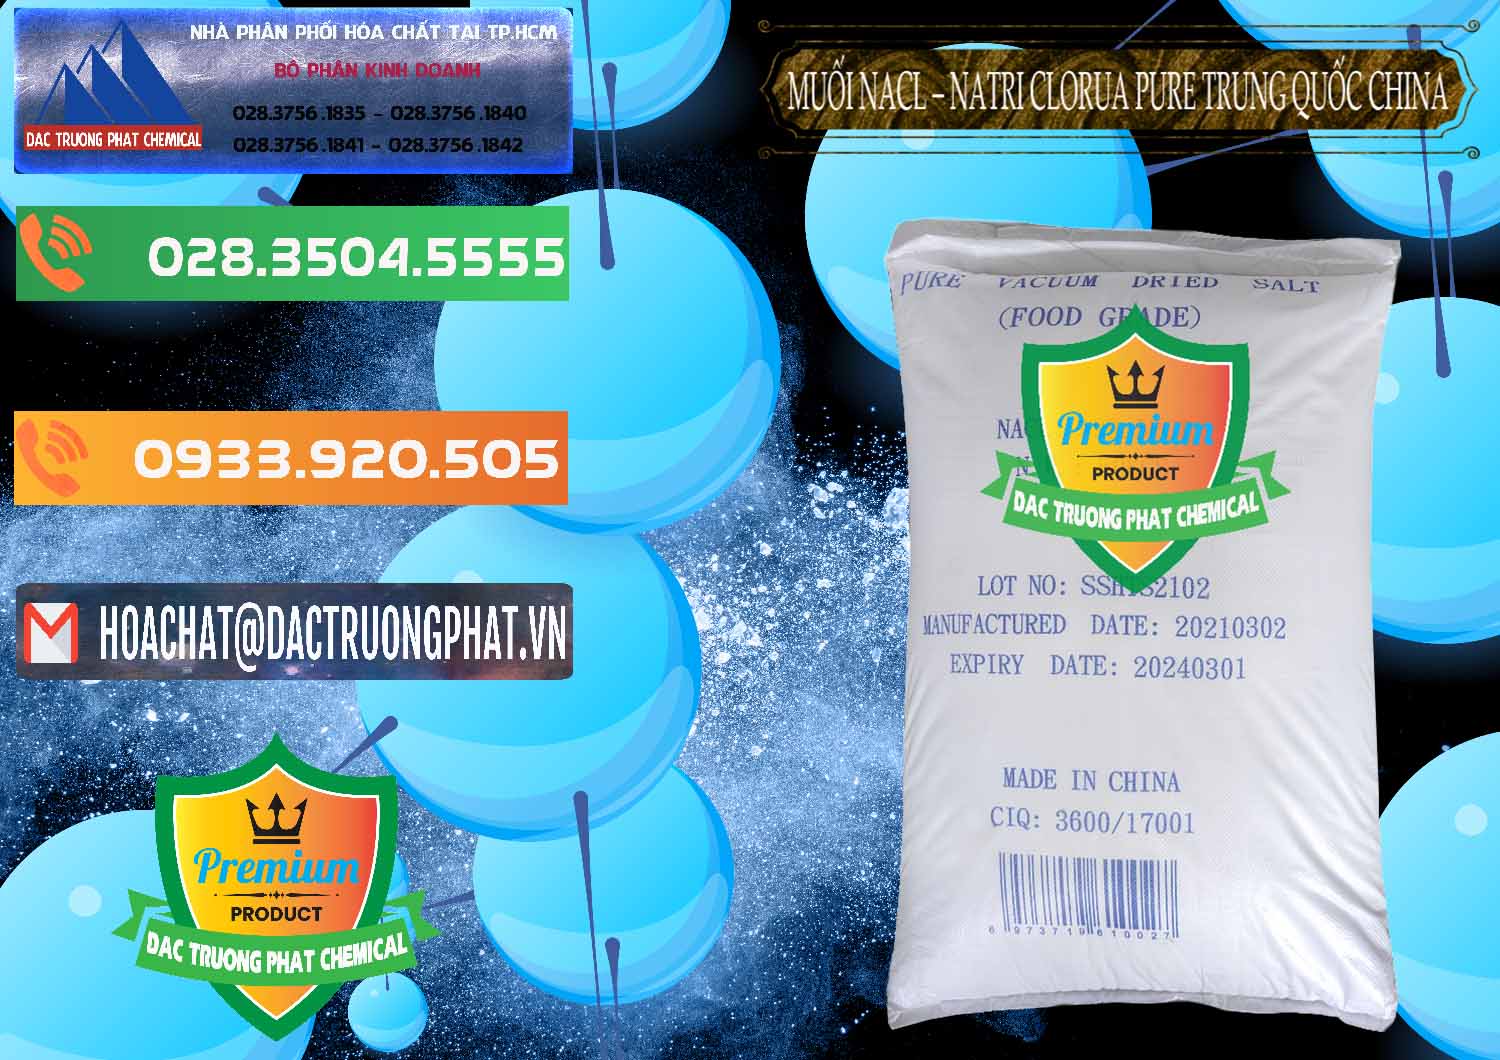 Bán - phân phối Muối NaCL – Sodium Chloride Pure Trung Quốc China - 0230 - Cty chuyên cung cấp & nhập khẩu hóa chất tại TP.HCM - hoachatxulynuoc.com.vn